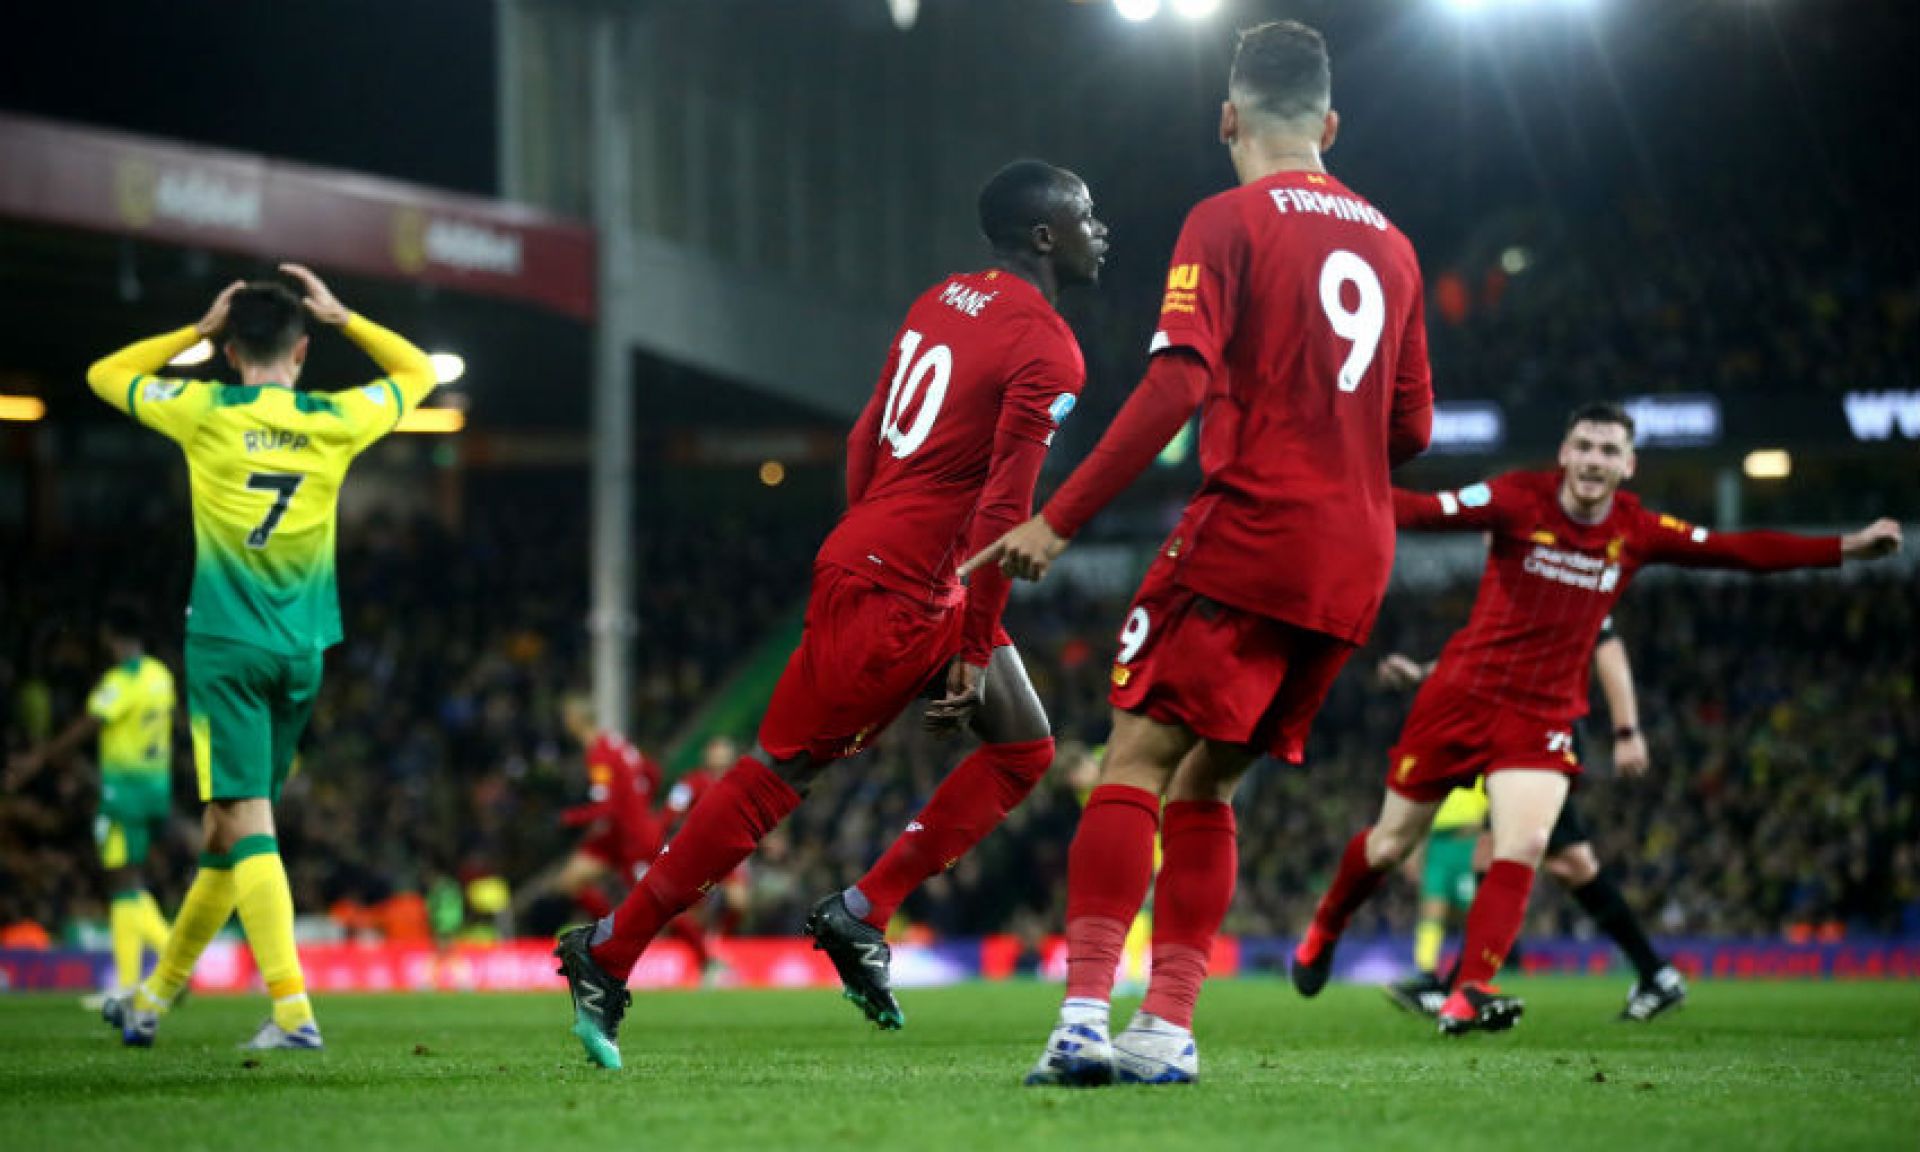 Δεν (το) χάνει με τίποτα! | Norwich 0-1 Liverpool: Match Review